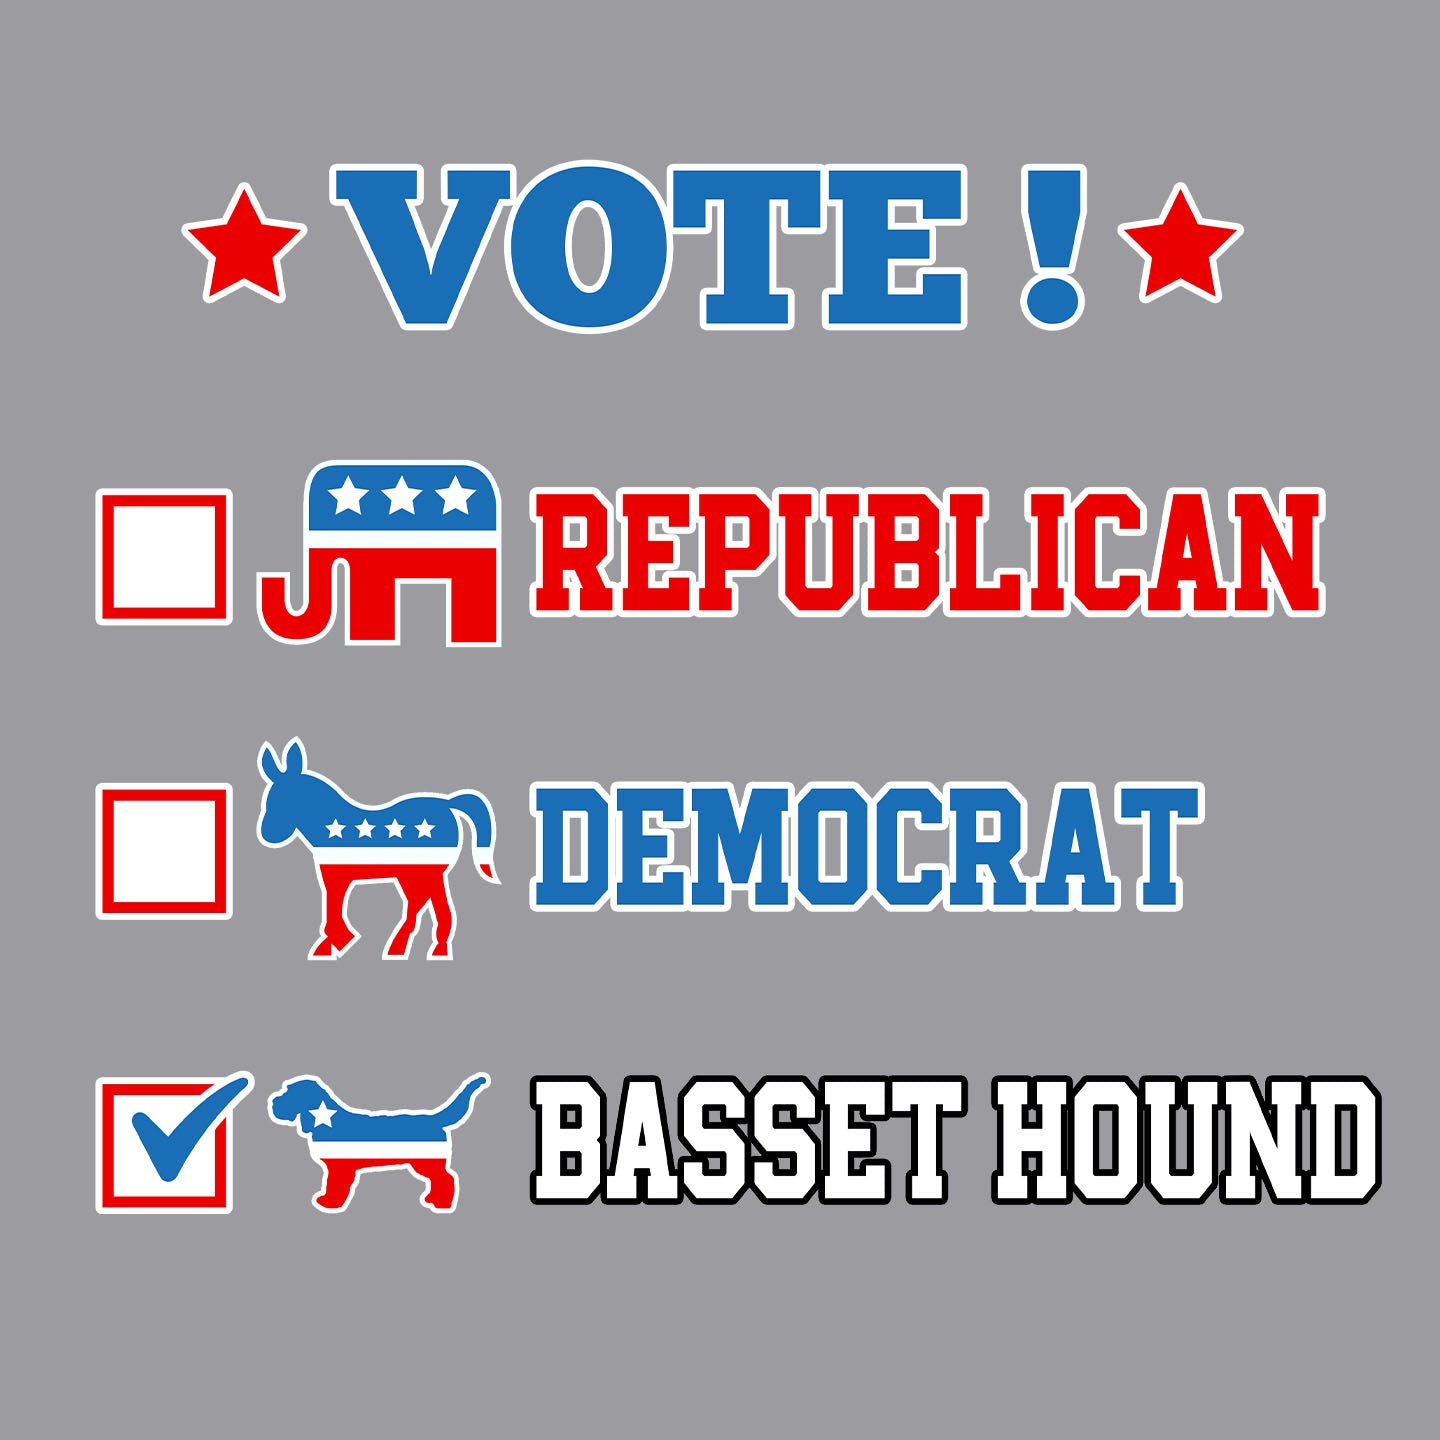 Vote for the Basset Hound - Adult Unisex Crewneck Sweatshirt